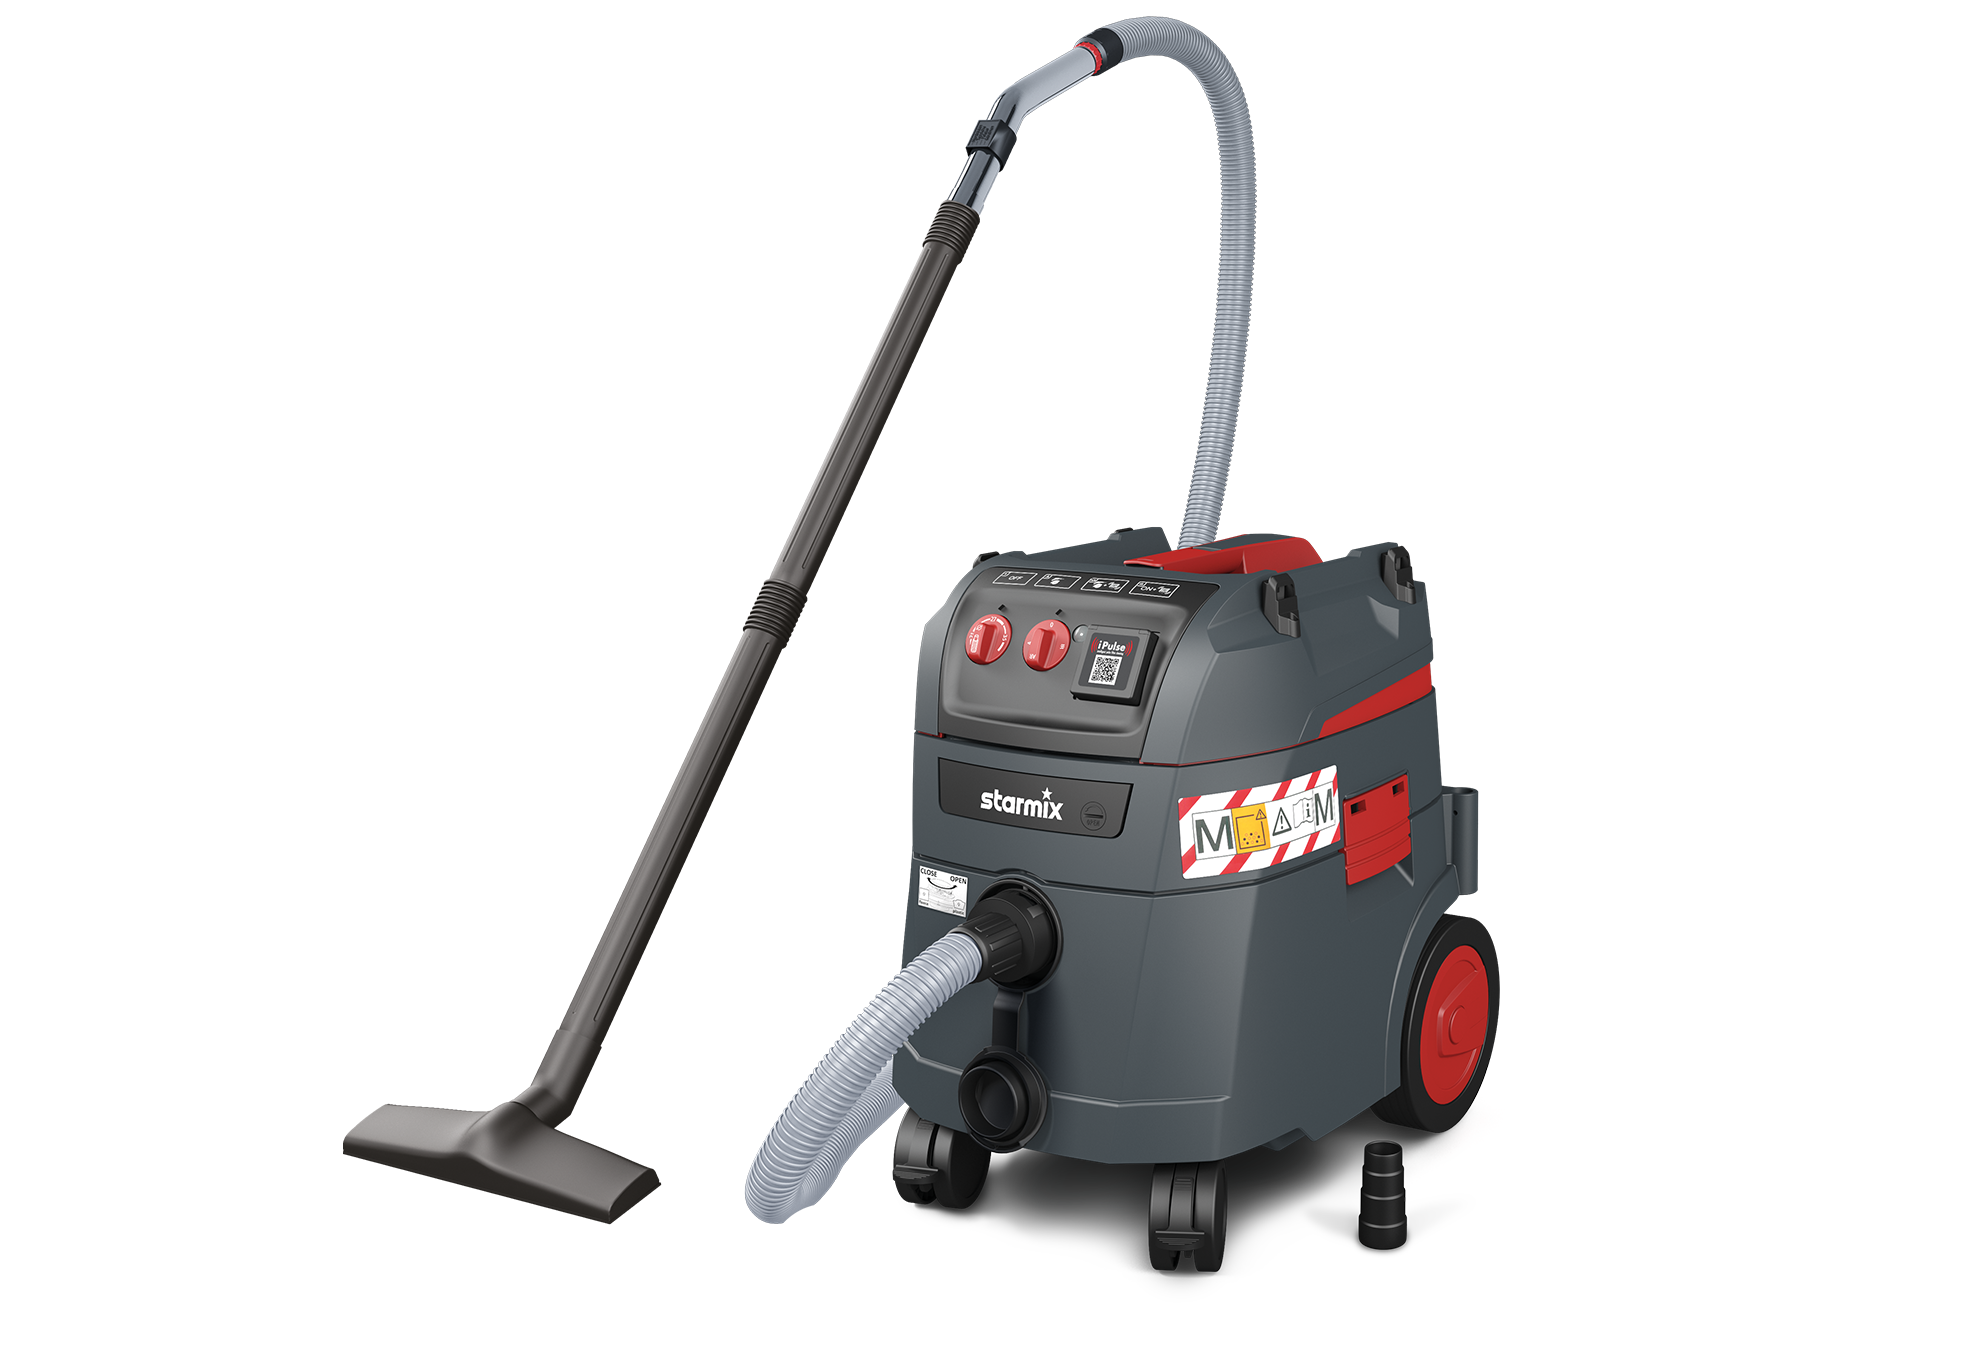 Universal vacuum cleaner - iPulse M-1635 Safe